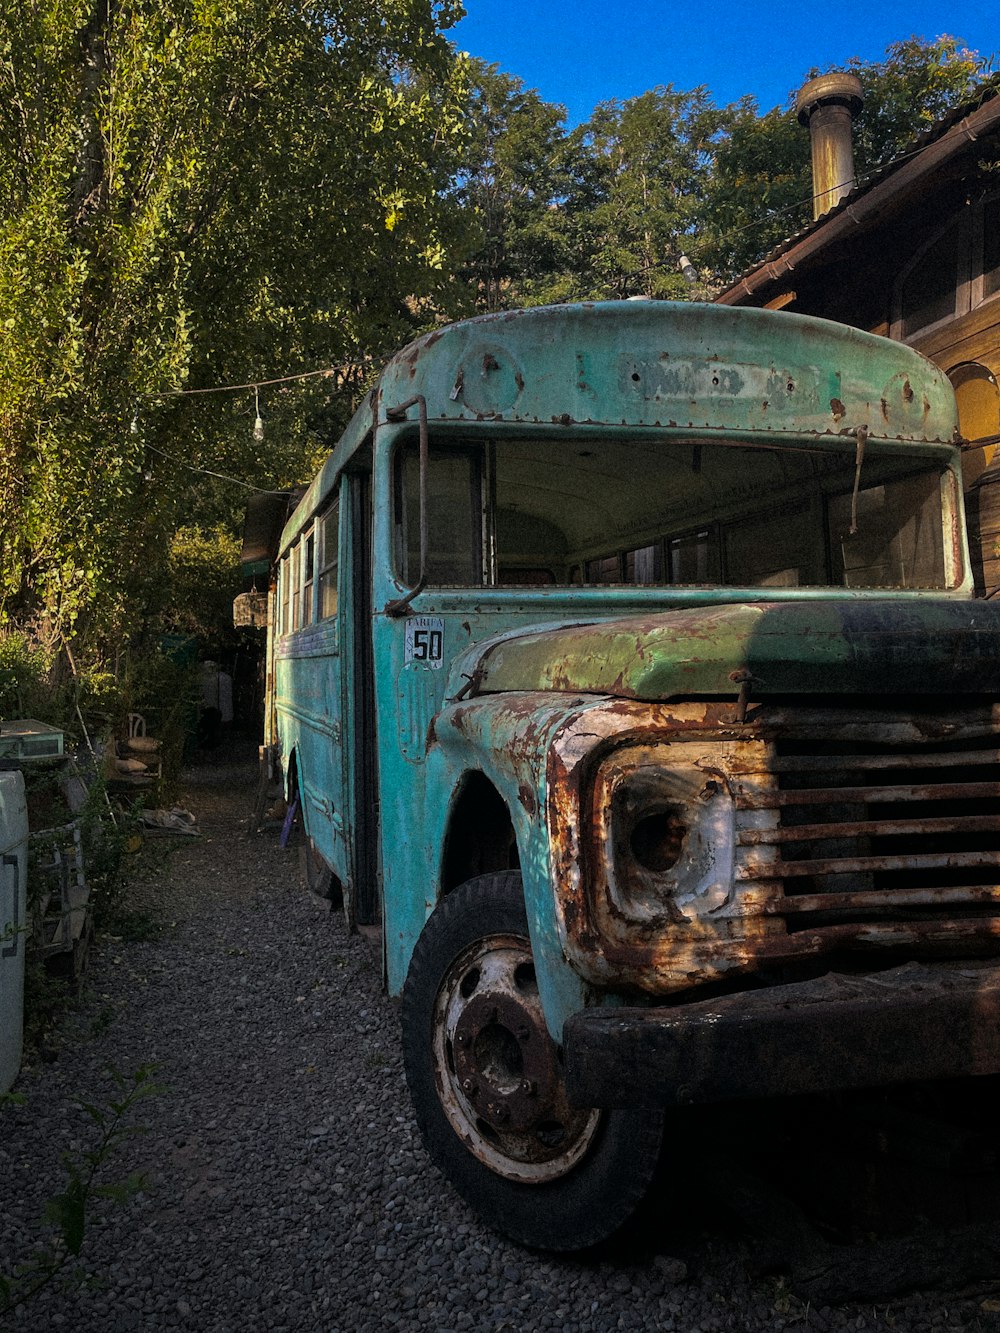 an old rusty school bus sitting in a yard